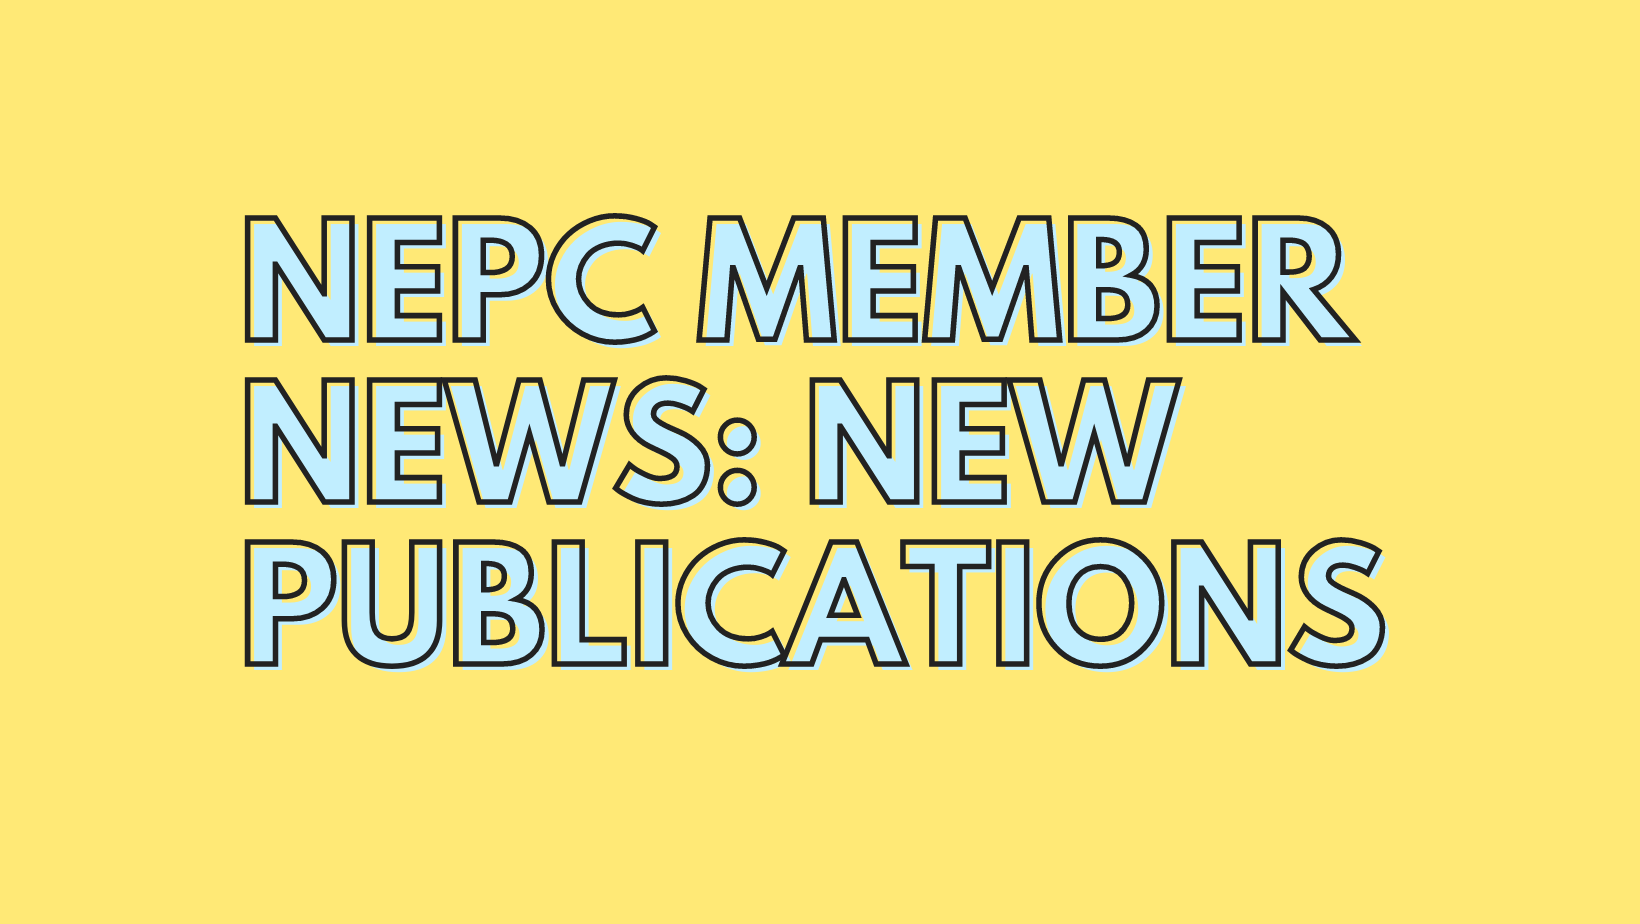 Member Publication News for November